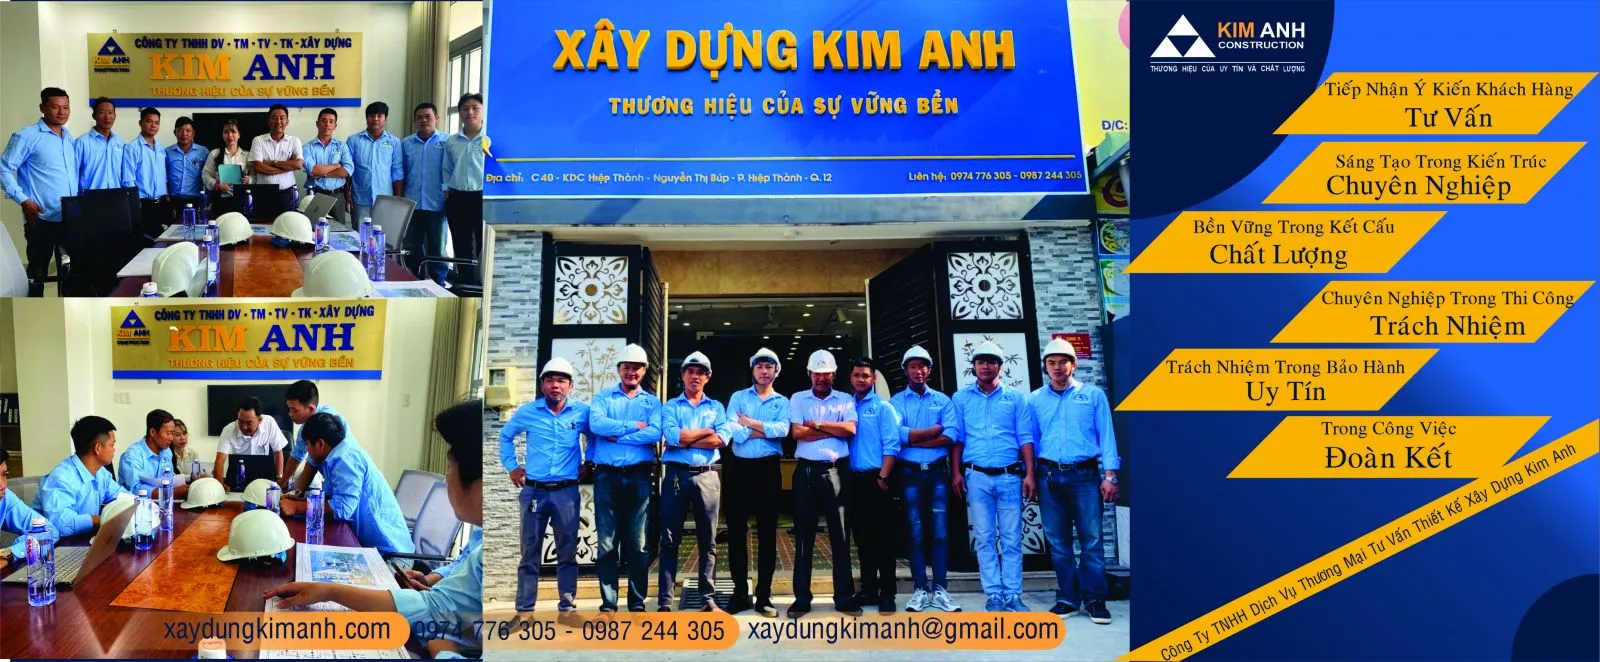 Đội ngũ công ty Xây Dựng Kim Anh - xaydungkimanh.com